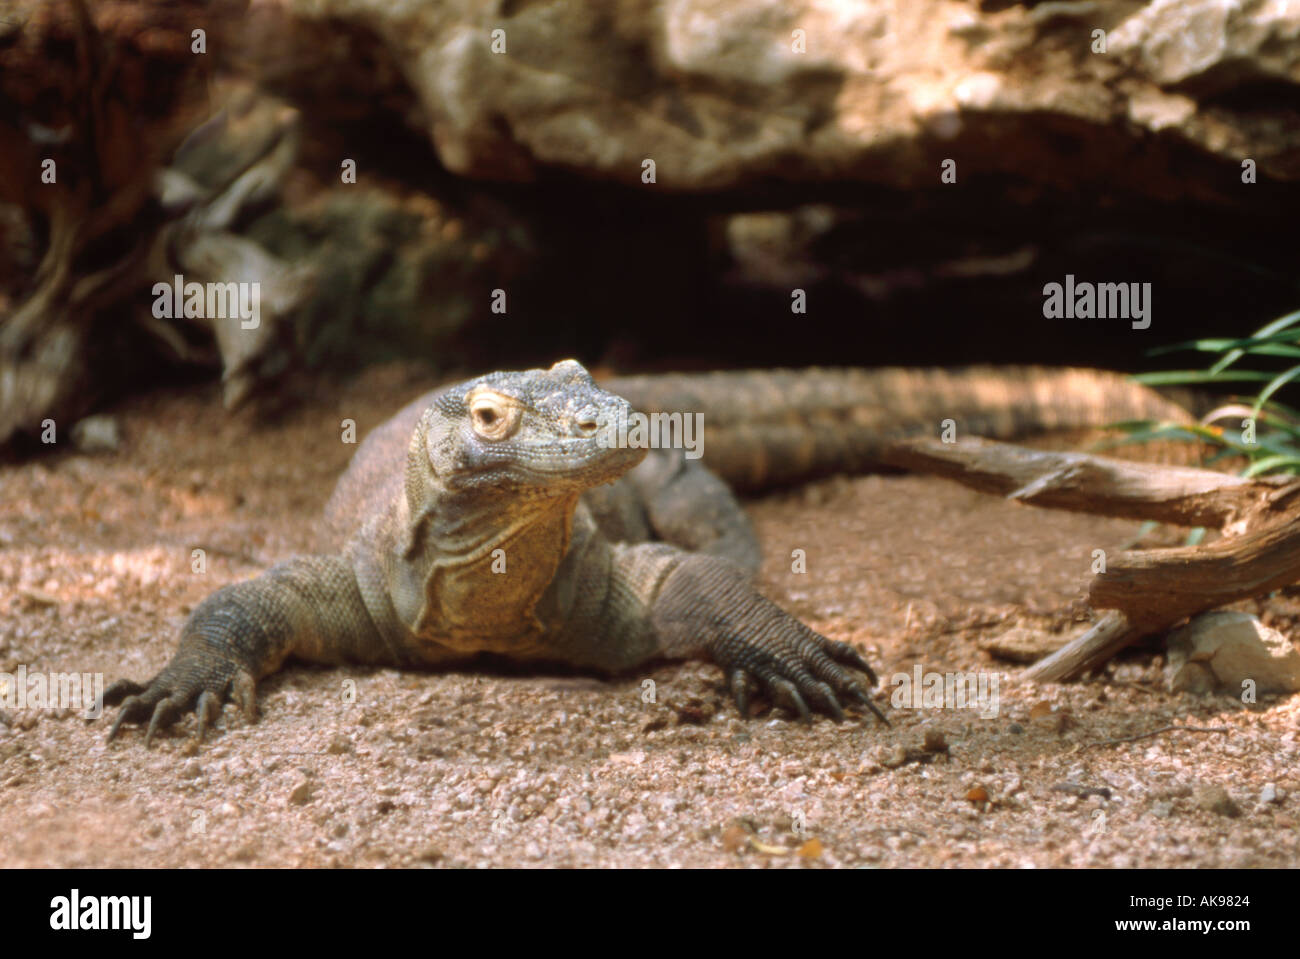 Komodo dragon in natural environment Stock Photo